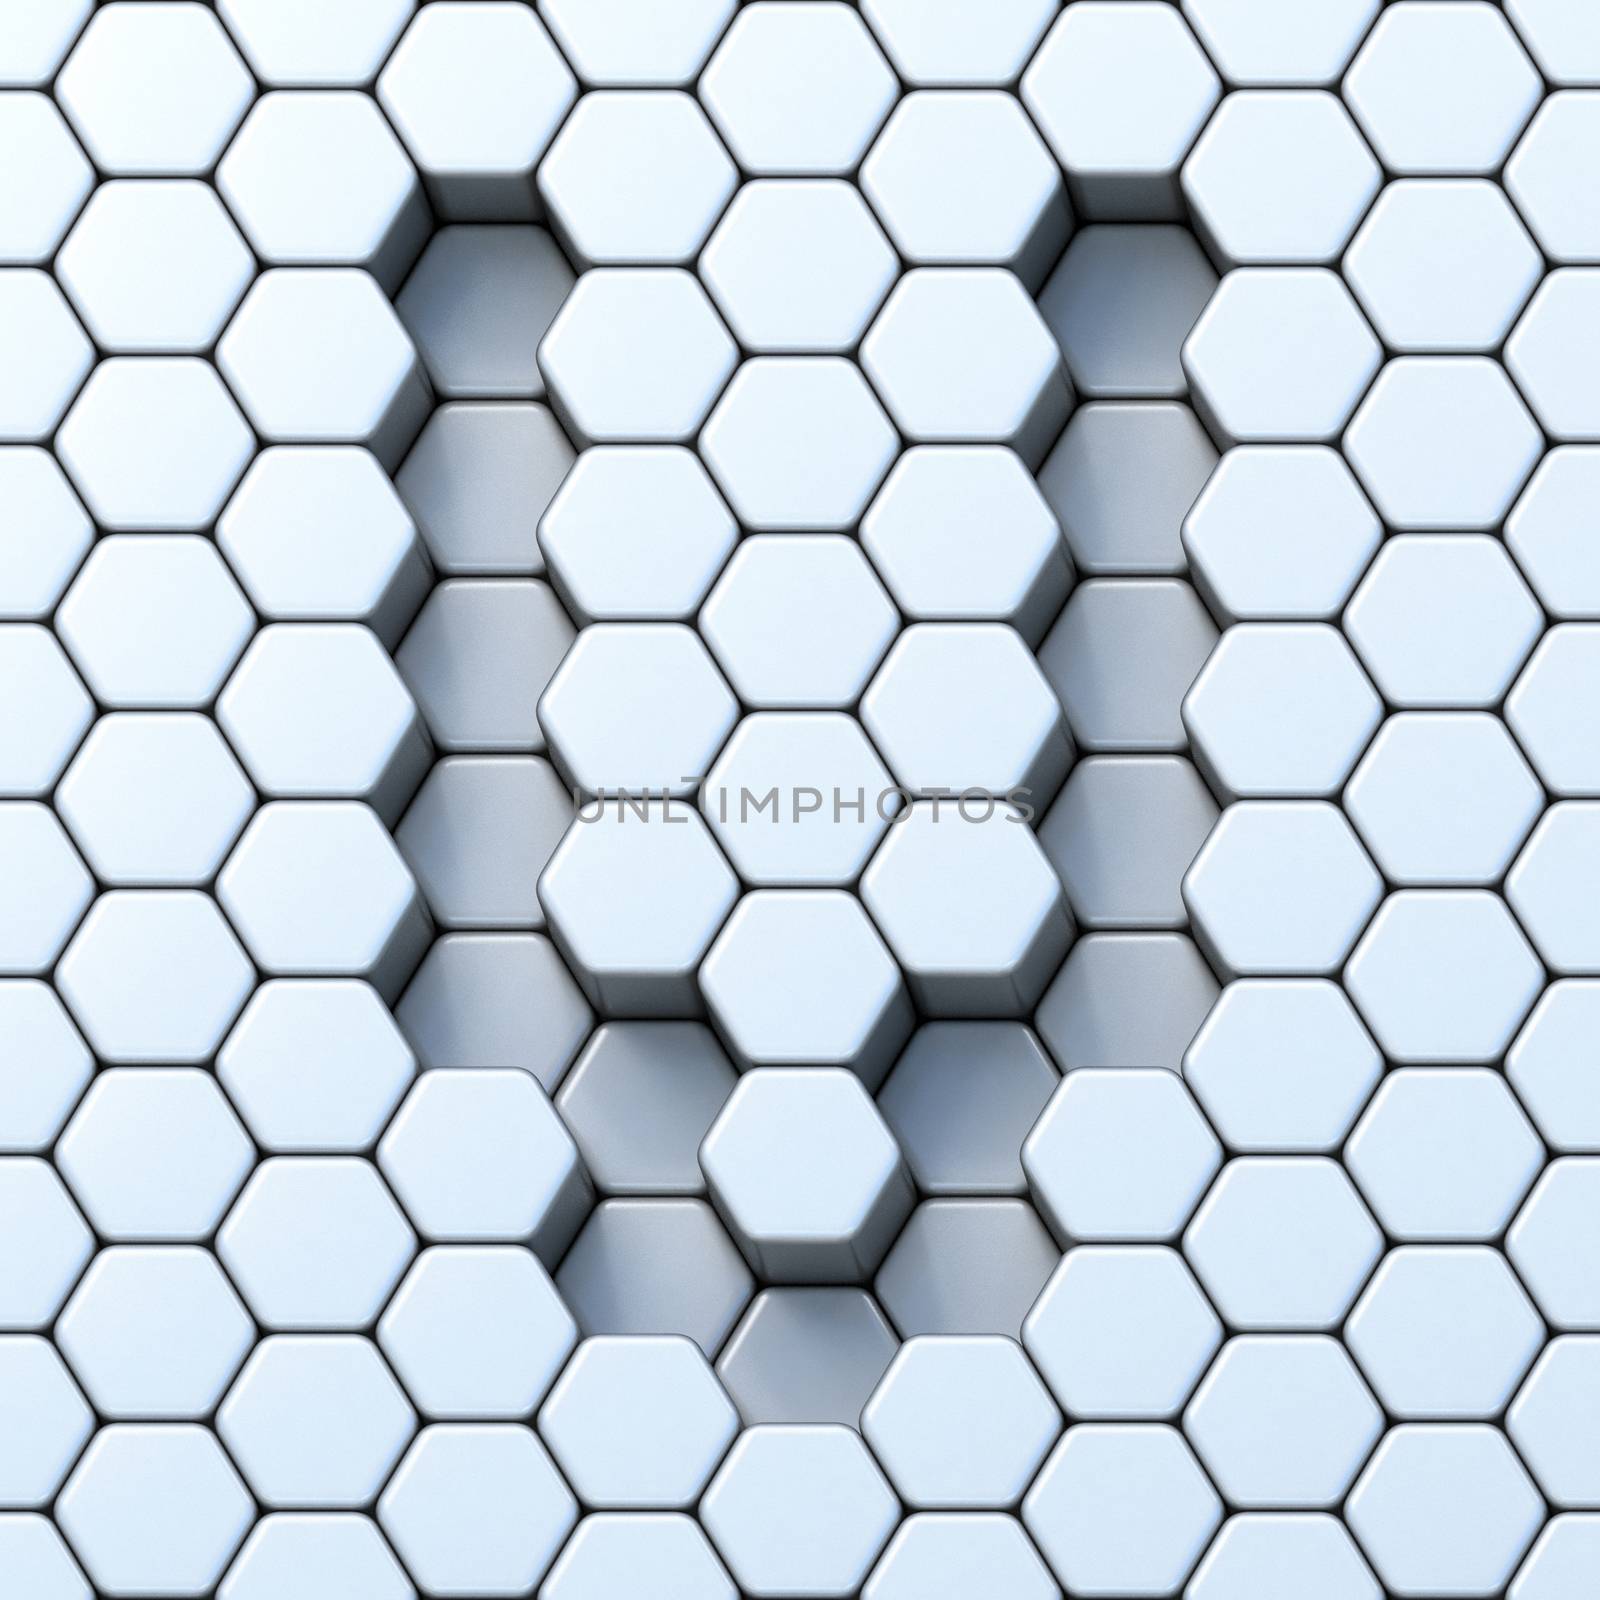 Hexagonal grid letter V 3D render illustration